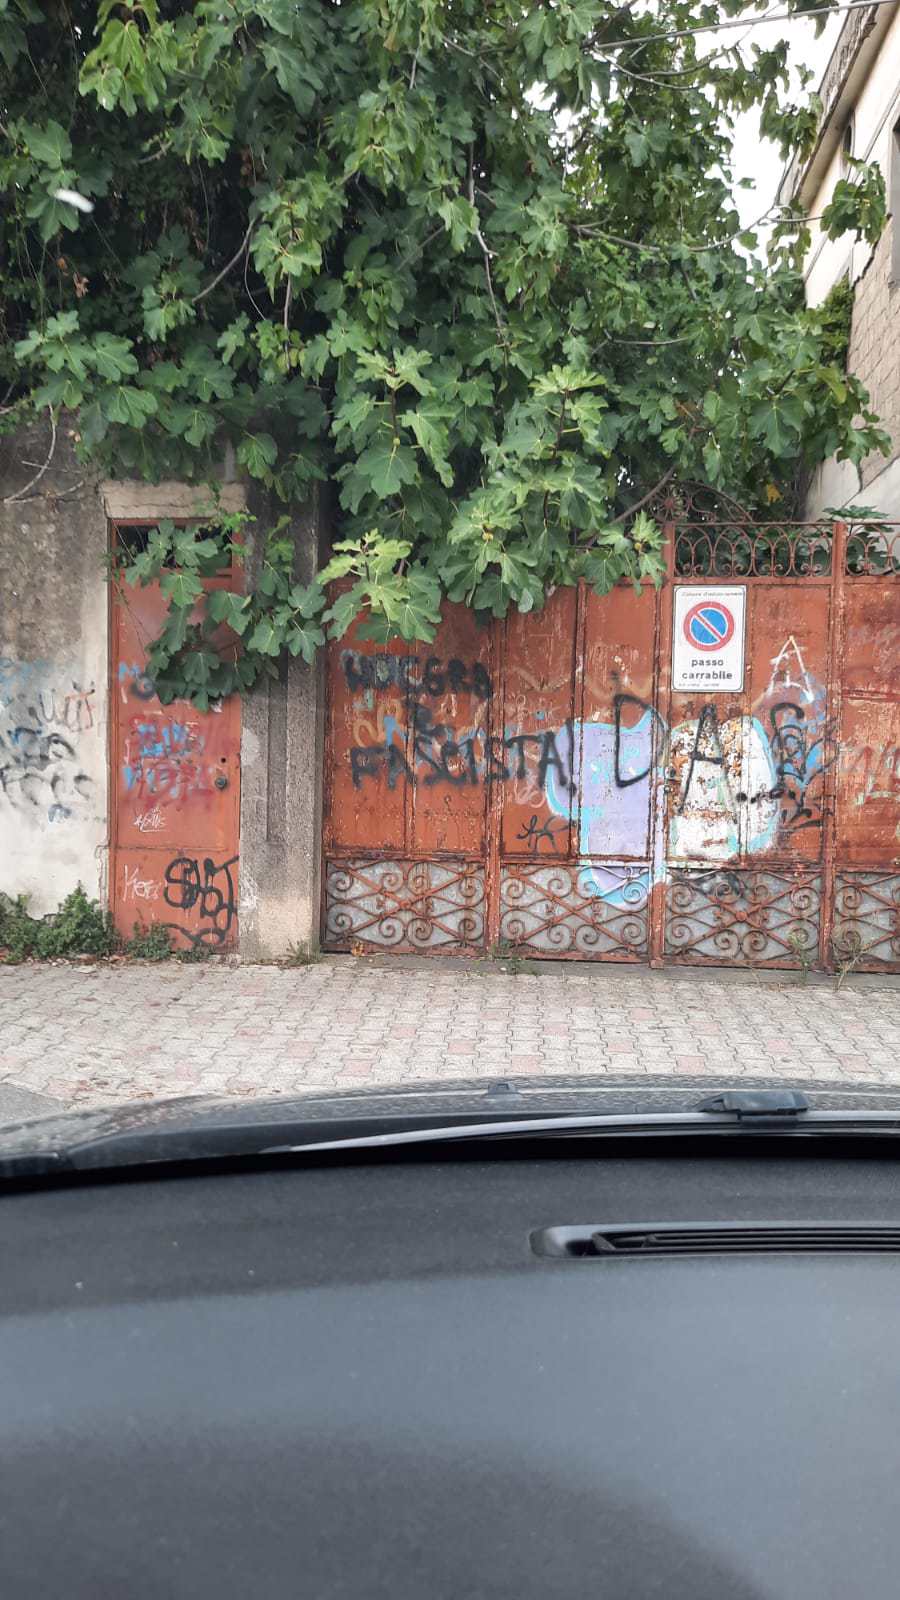 Raid vandalico a Nocera Inferiore. Distrutta la mini ferrovia al Castello e realizzate scritte fasciste ed omofobe.